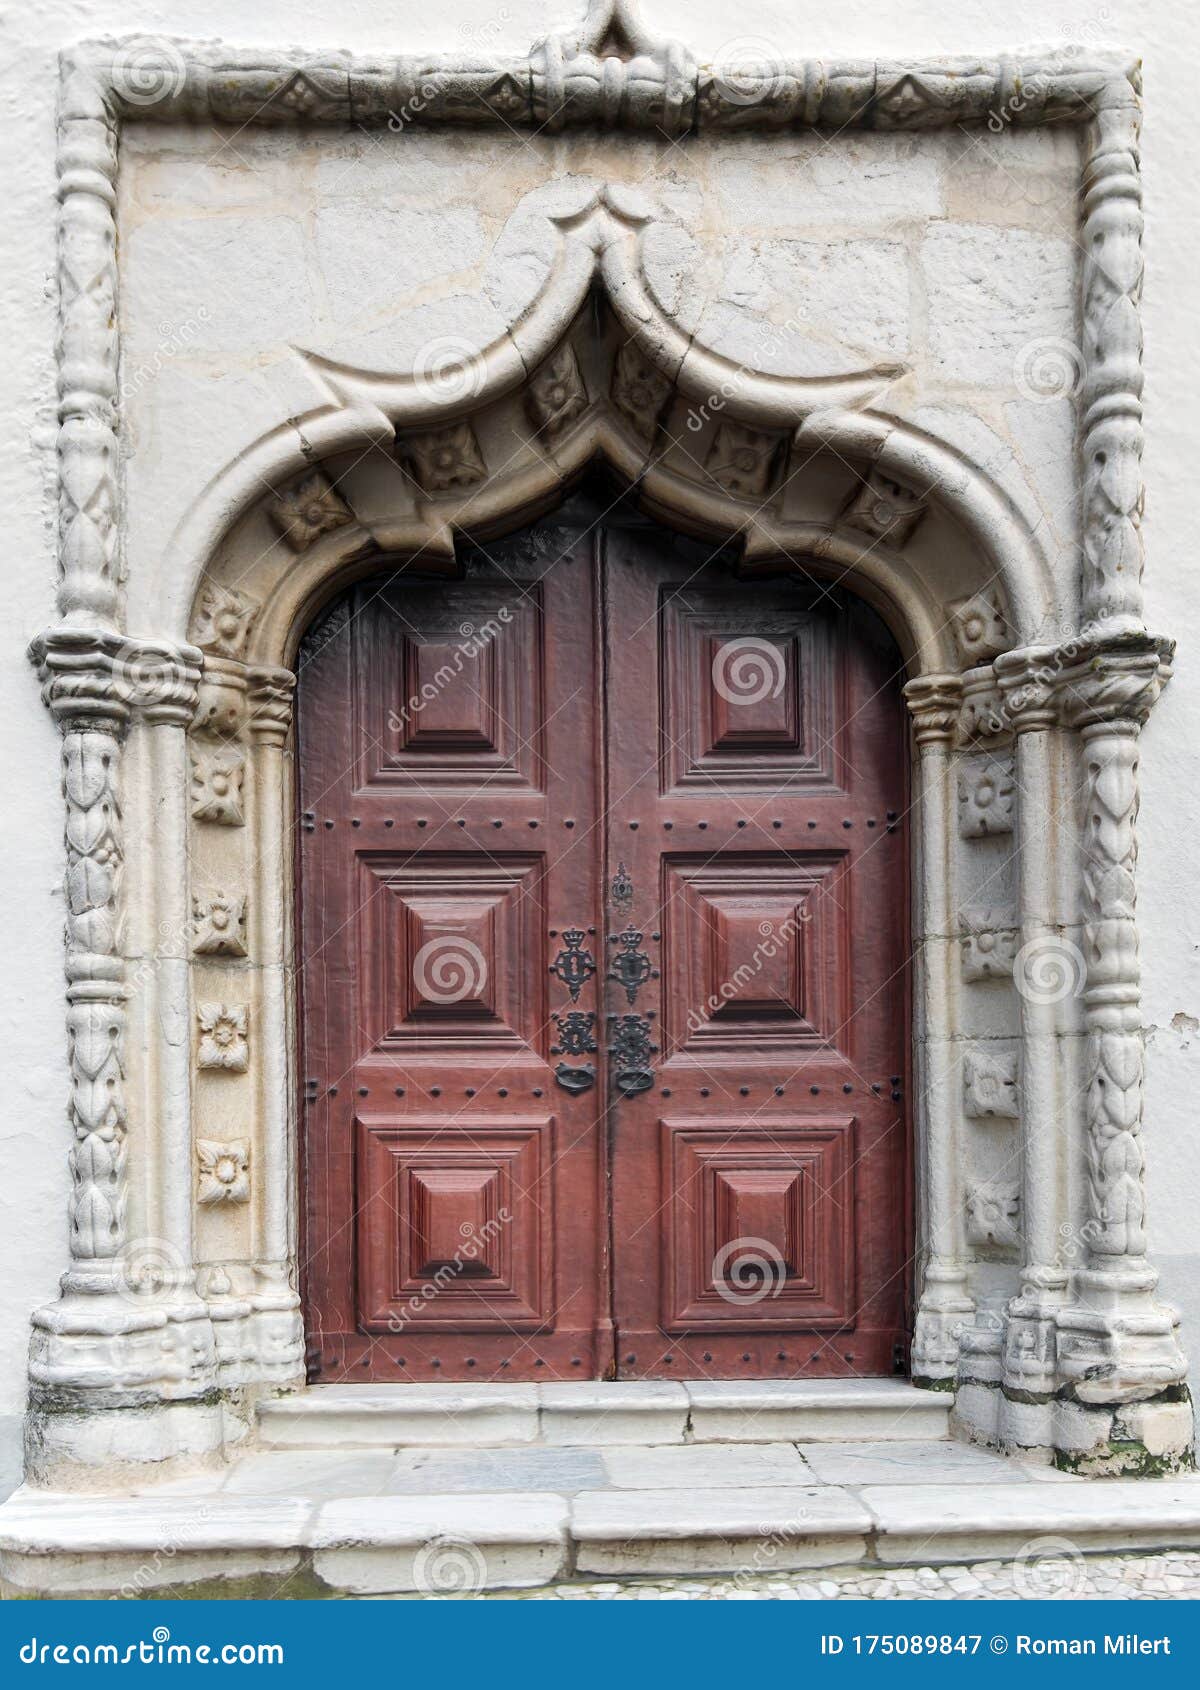 portal of the igreja da misericordia church of montemor-o-novo, portugal